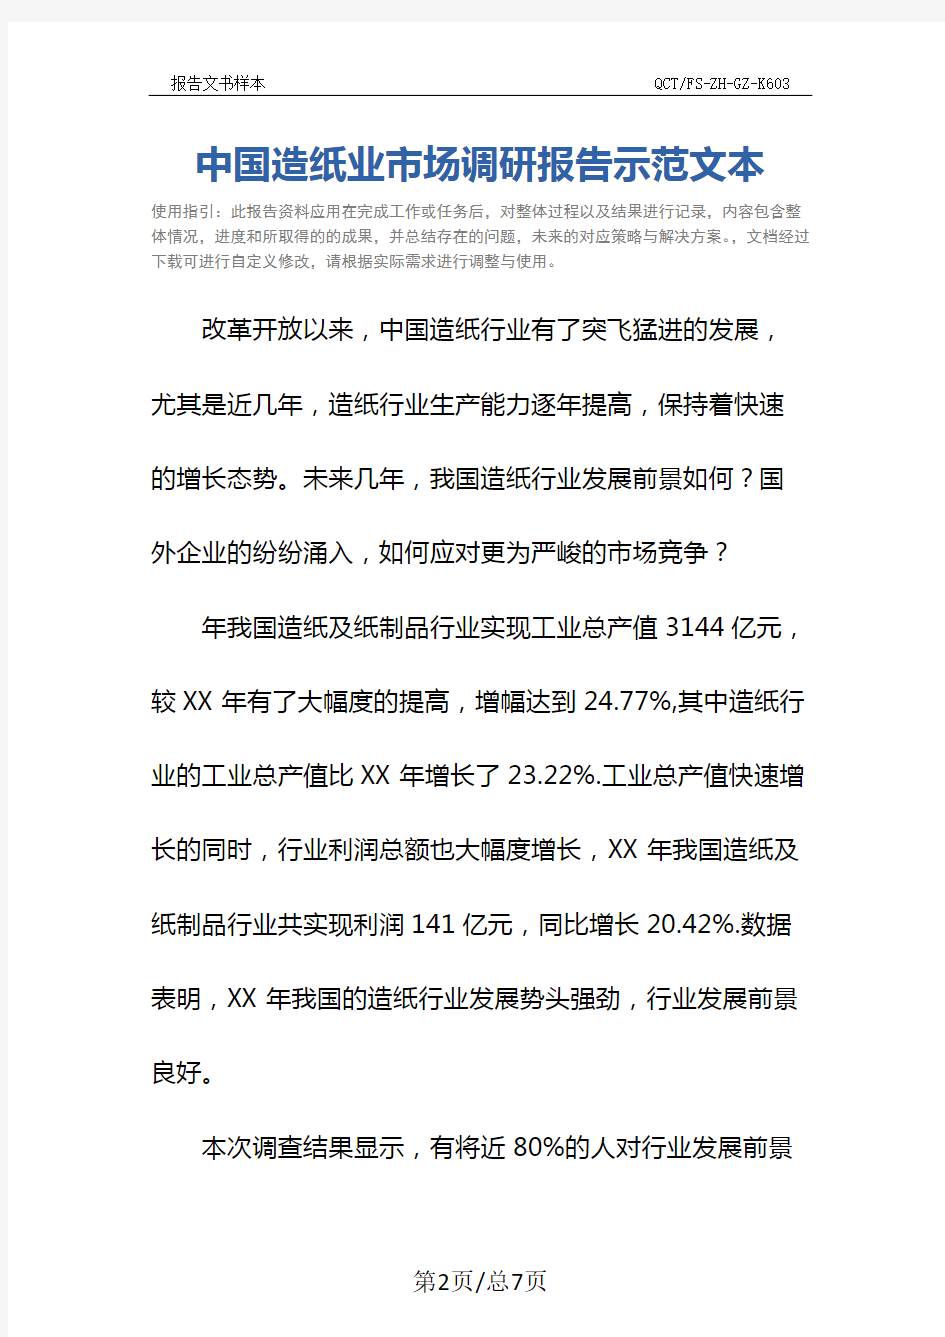 中国造纸业市场调研报告示范文本